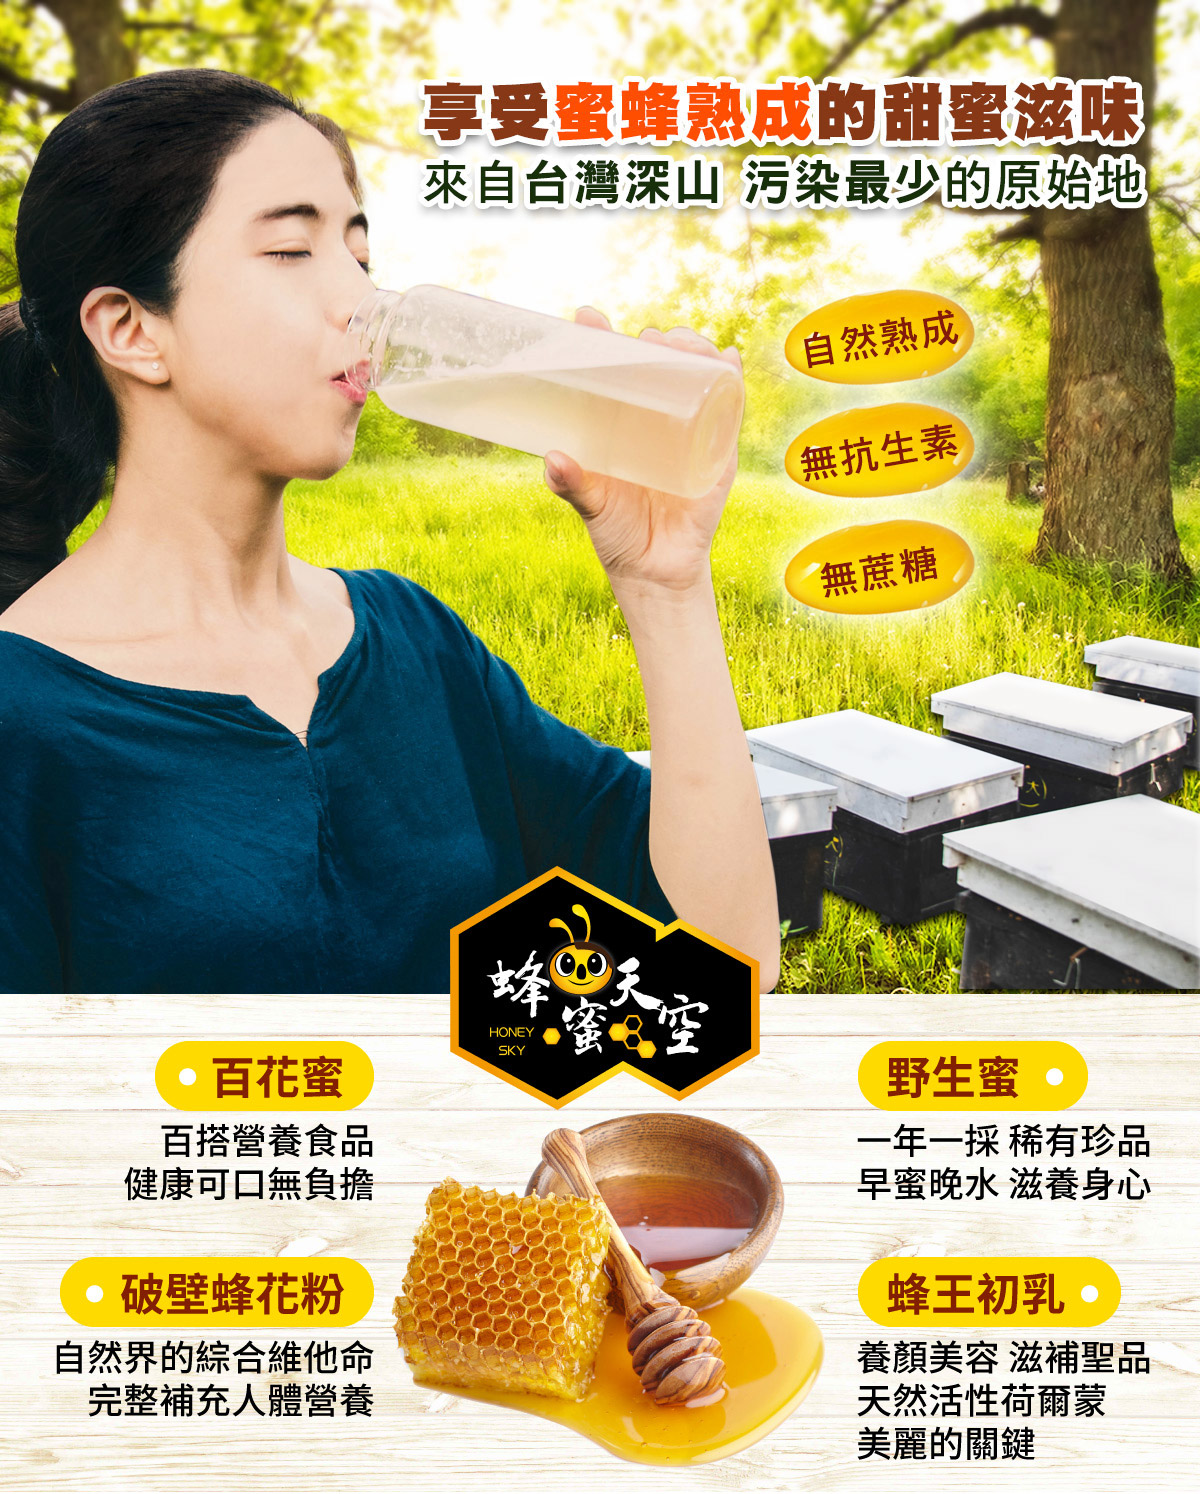 享受蜜蜂熟成的甜蜜滋味 來自台灣深山污染最少的原始地